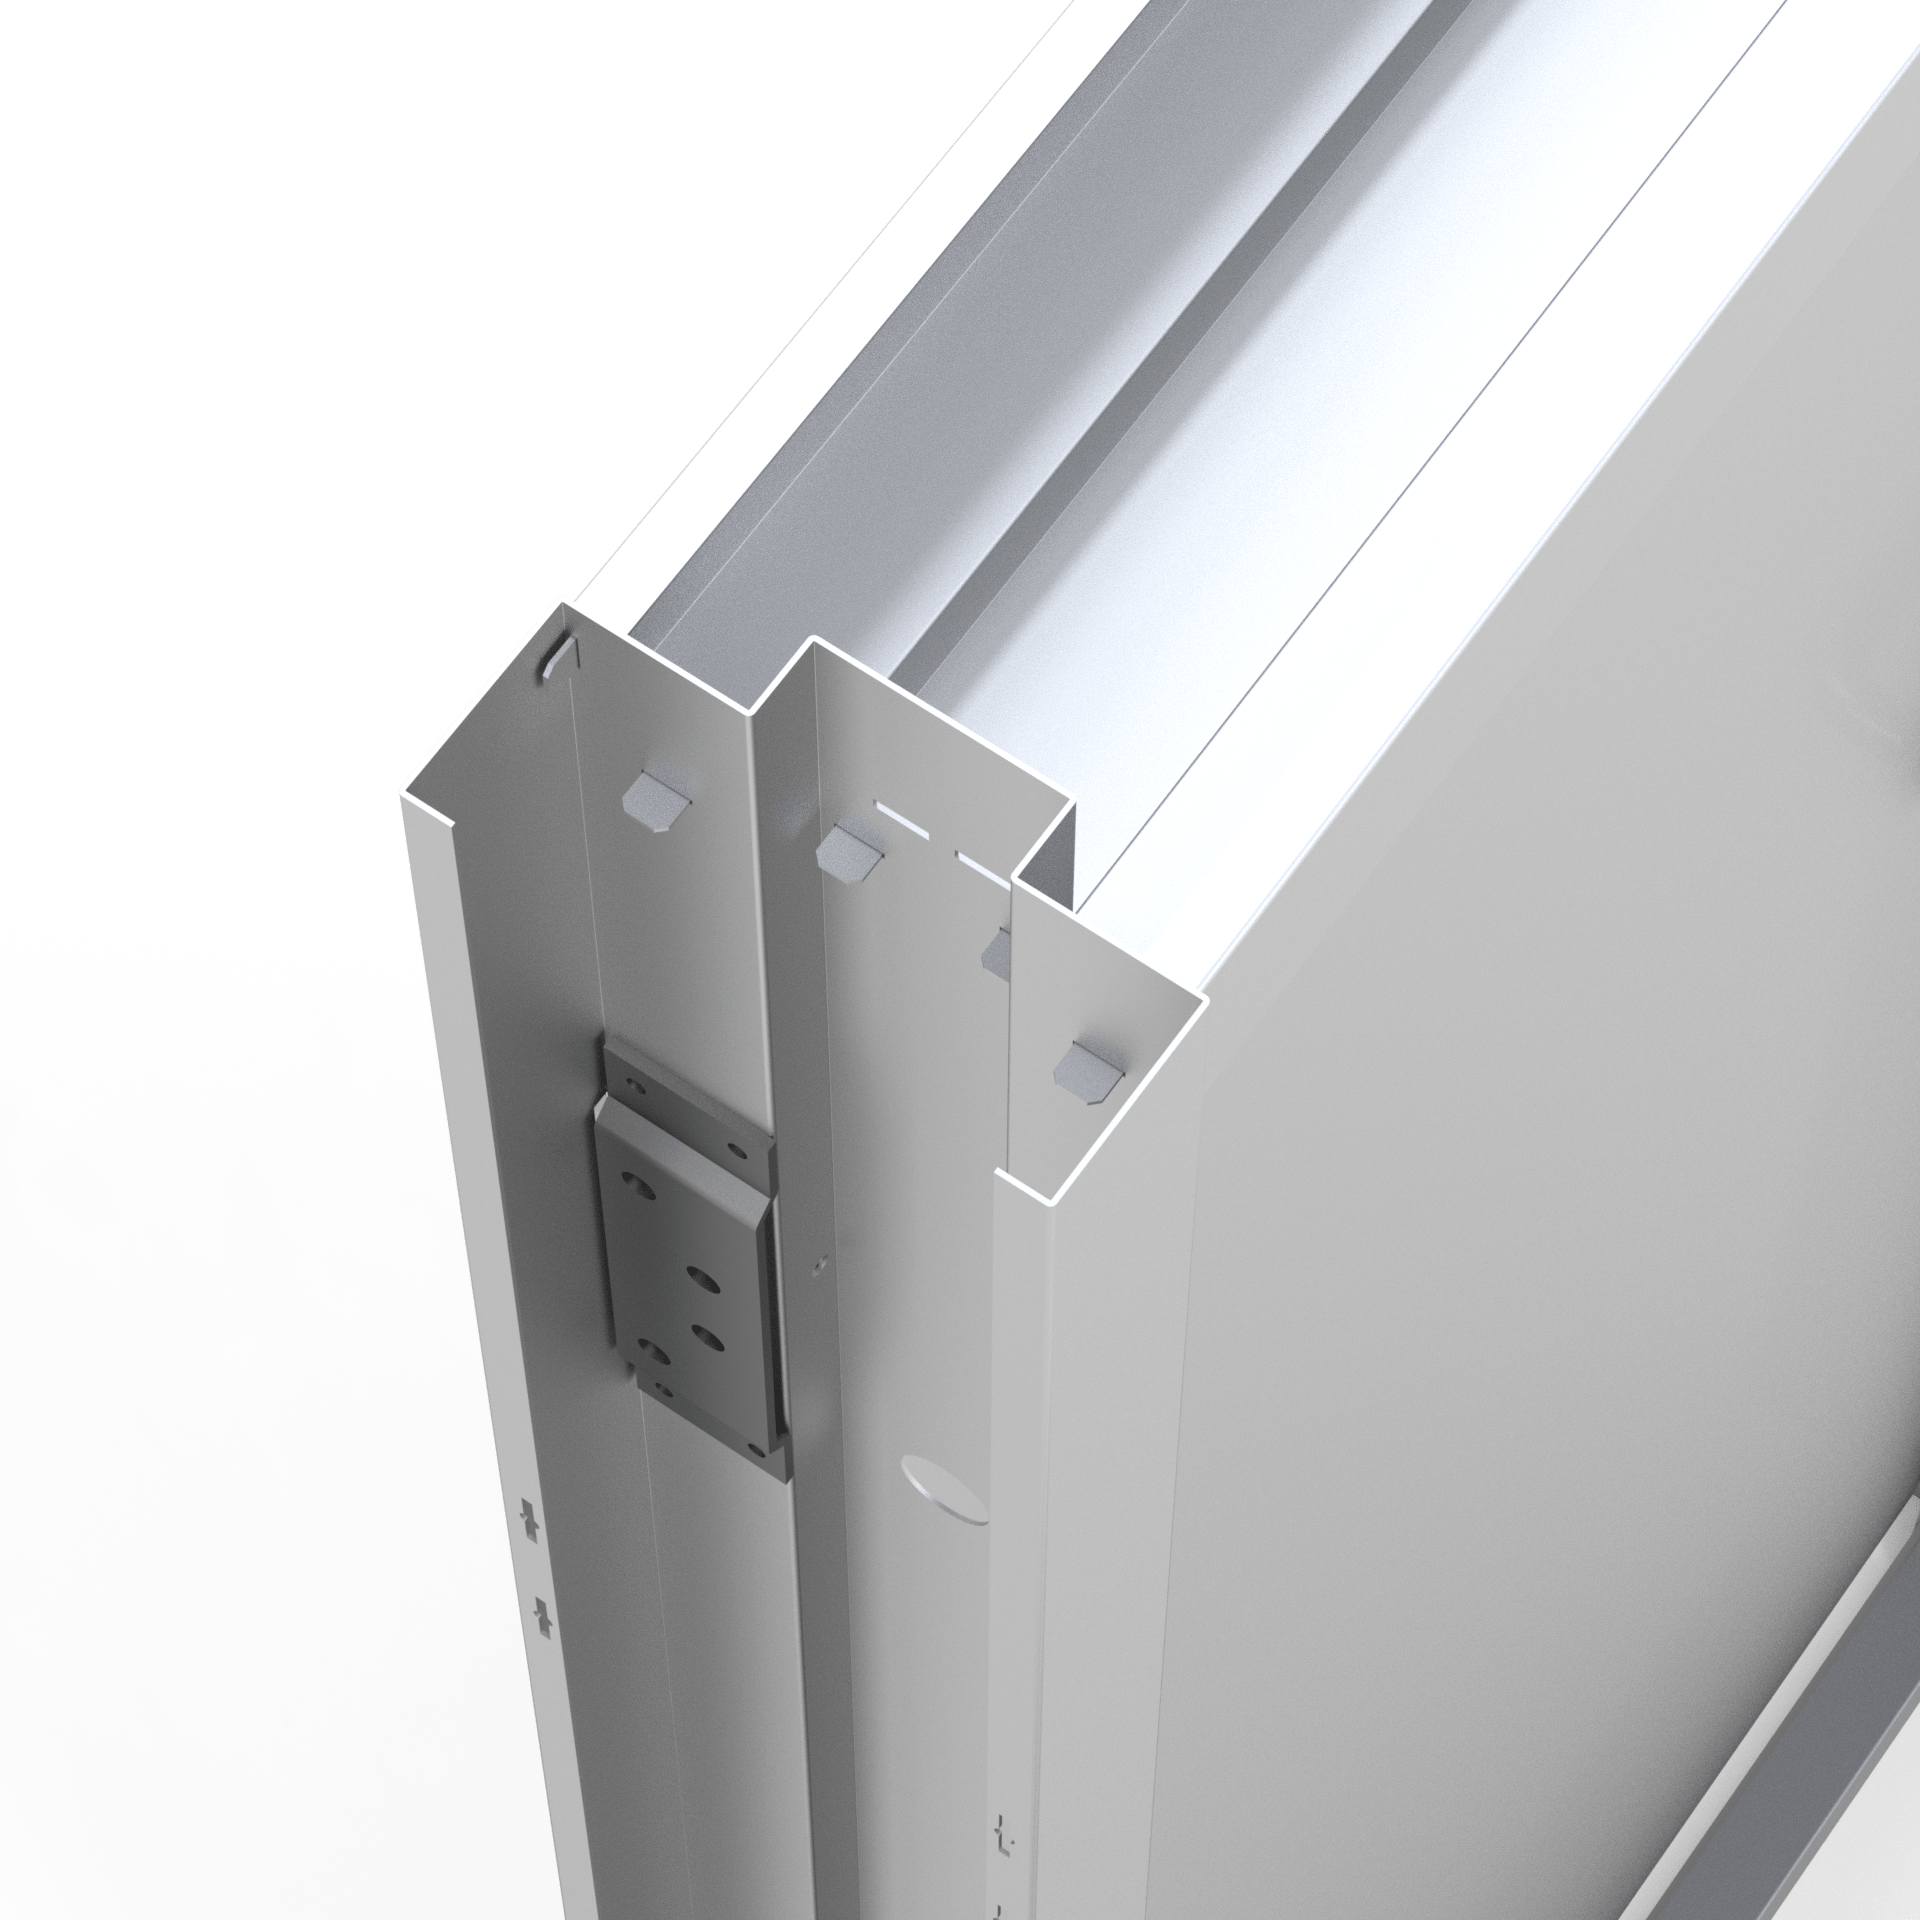 Detalle marco MR2 para puerta cortafuego UL